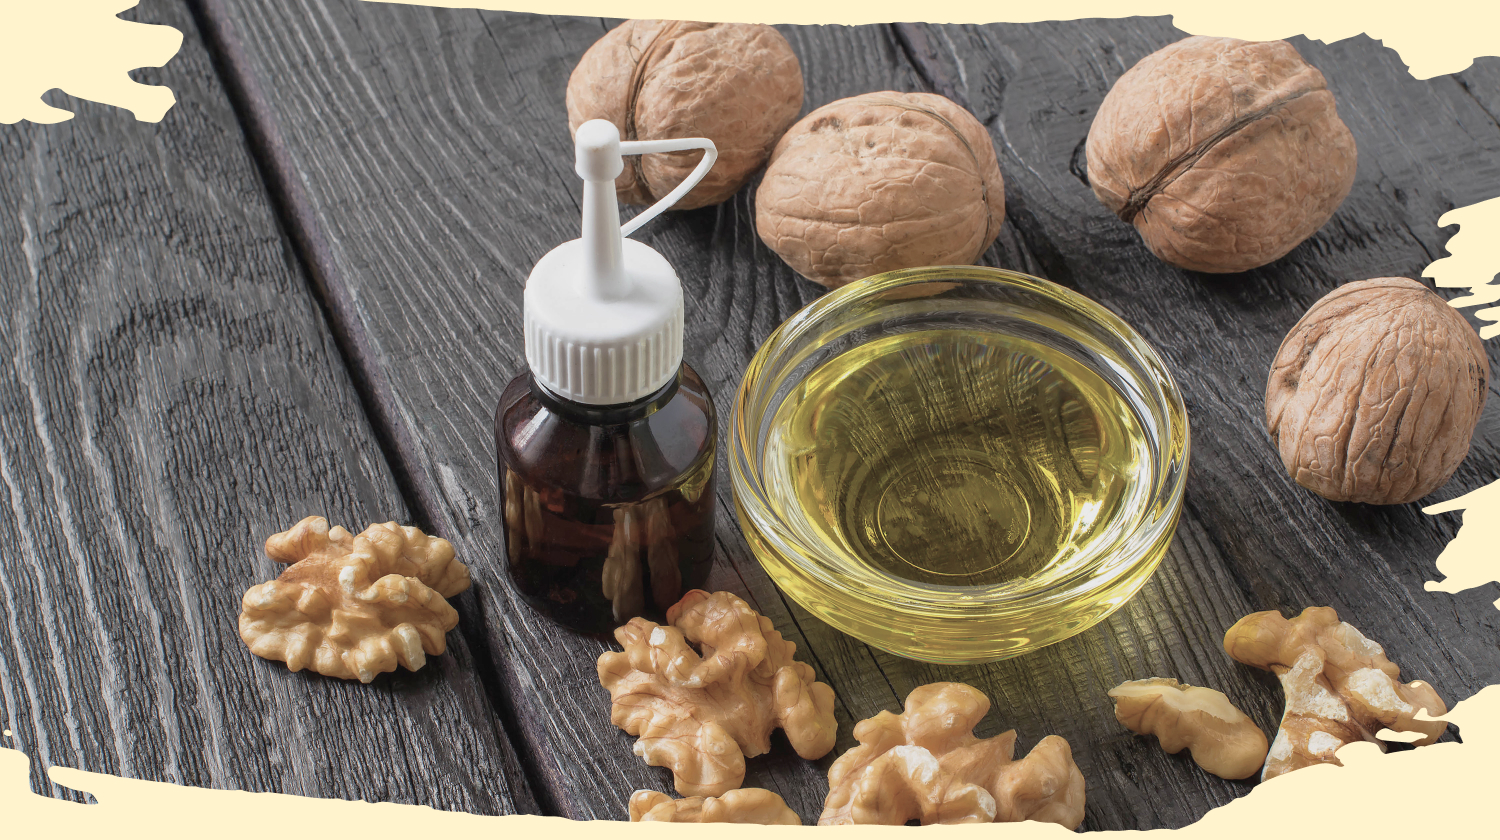 walnut oil benefits|walnut oil benefits|walnut oil benefits|walnut oil benefits